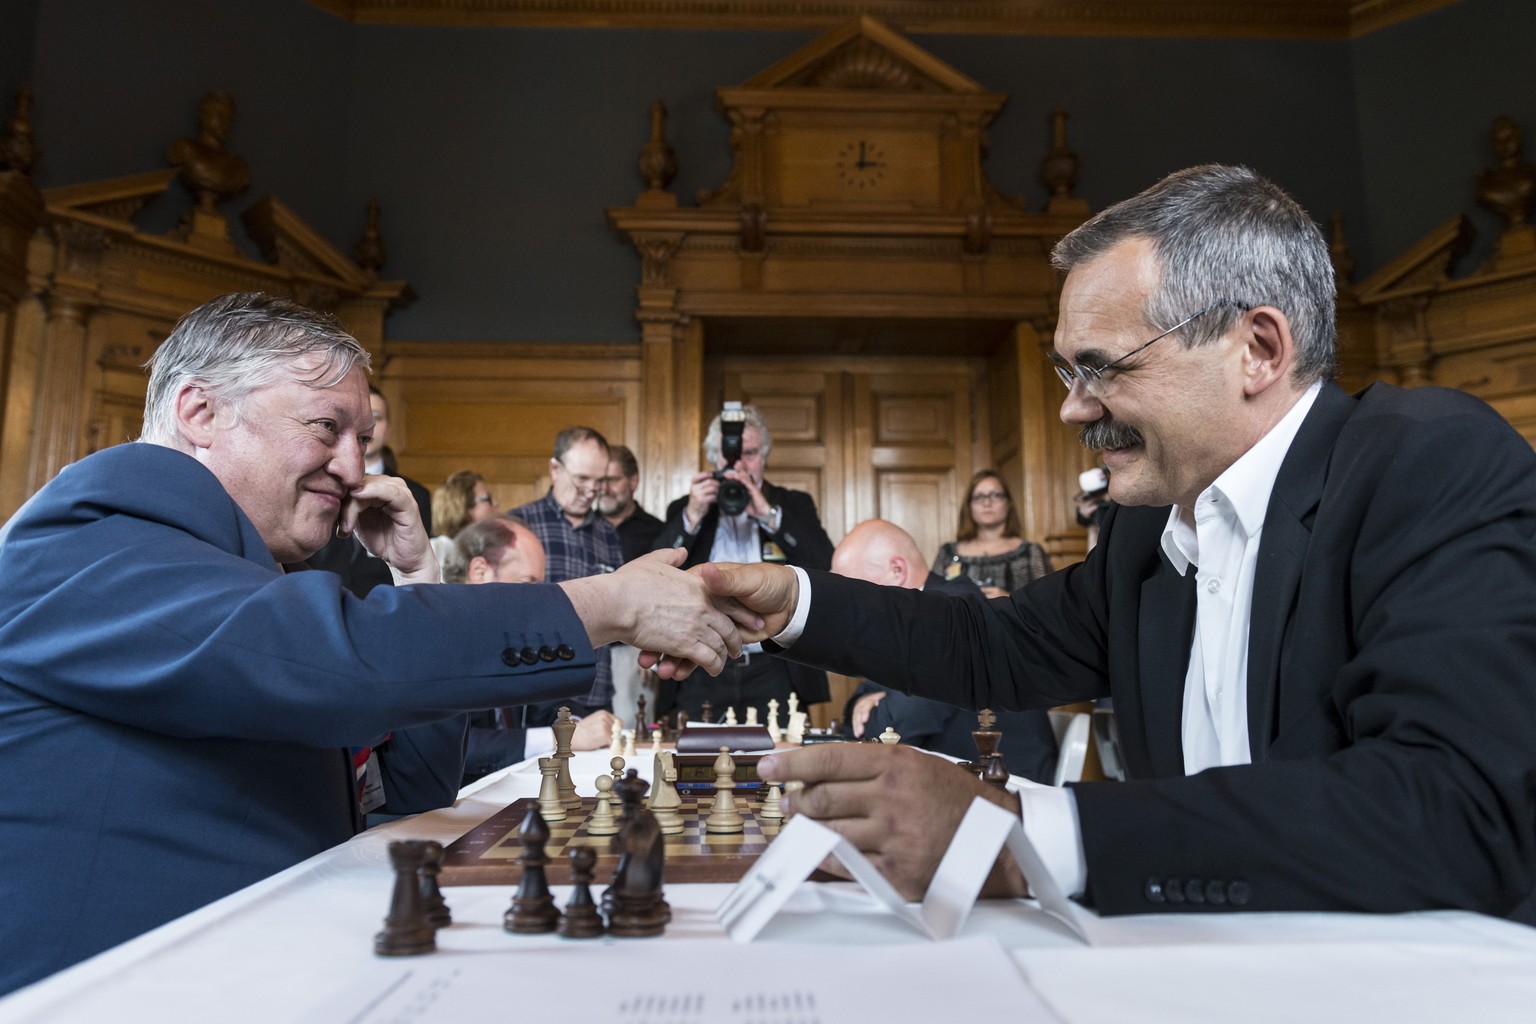 Der ehemalige Schach-Weltmeister und heutige Abgeordnete Anatoli Karpow (links) gewann wenig überraschend die Partie gegen&nbsp;Nationalrat Jean-François Steiert (SP/FR)&nbsp;